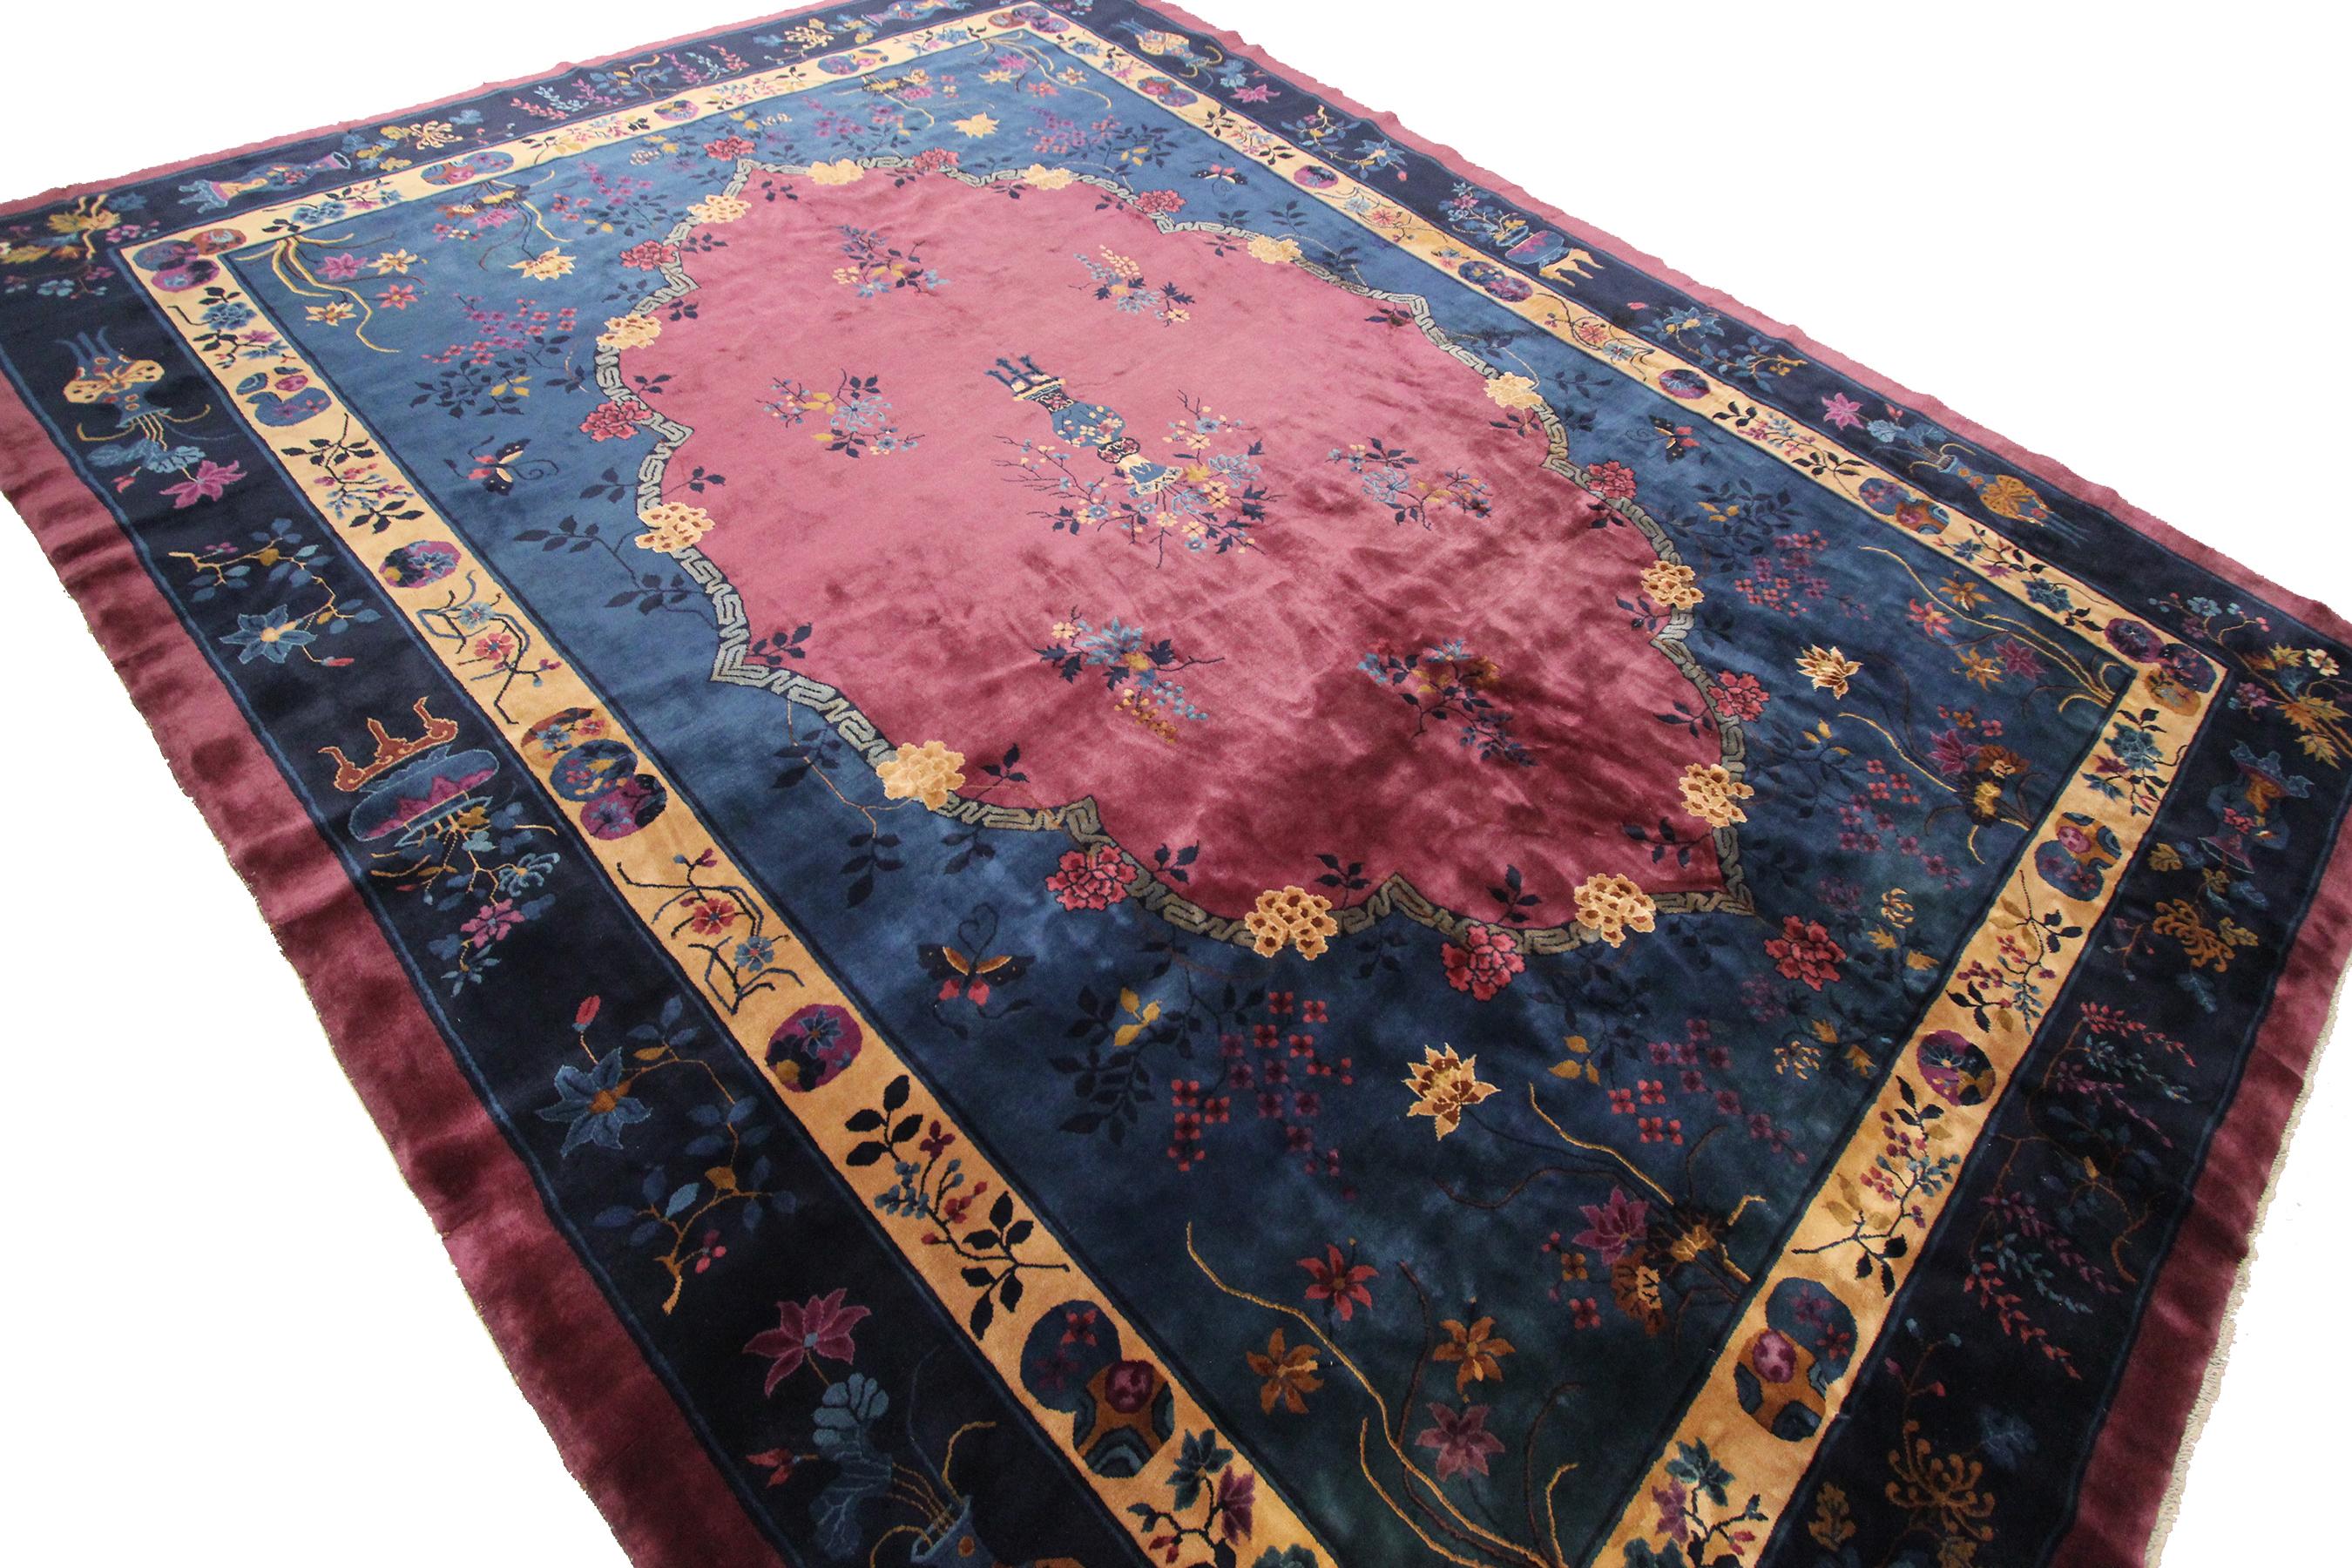 Rare antique Art Deco rug antique Chinese rug Art Nouveau rare handmade
10 x 13'1